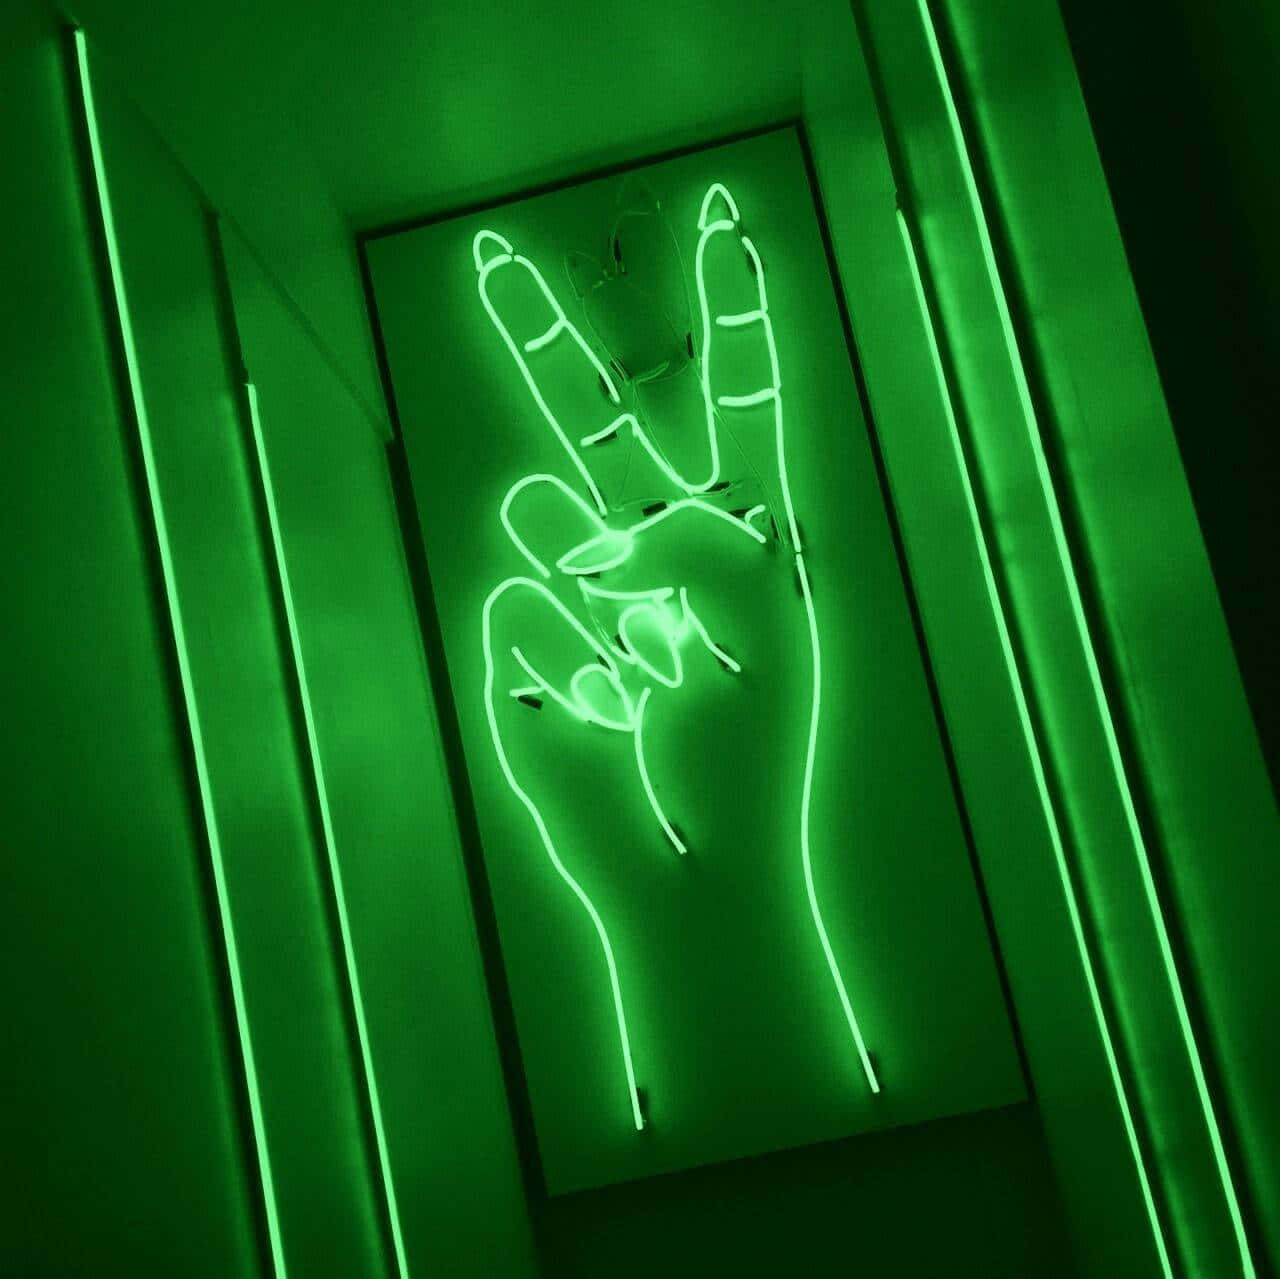 Engrön Neon-skylt Med En Hand I Den. Wallpaper